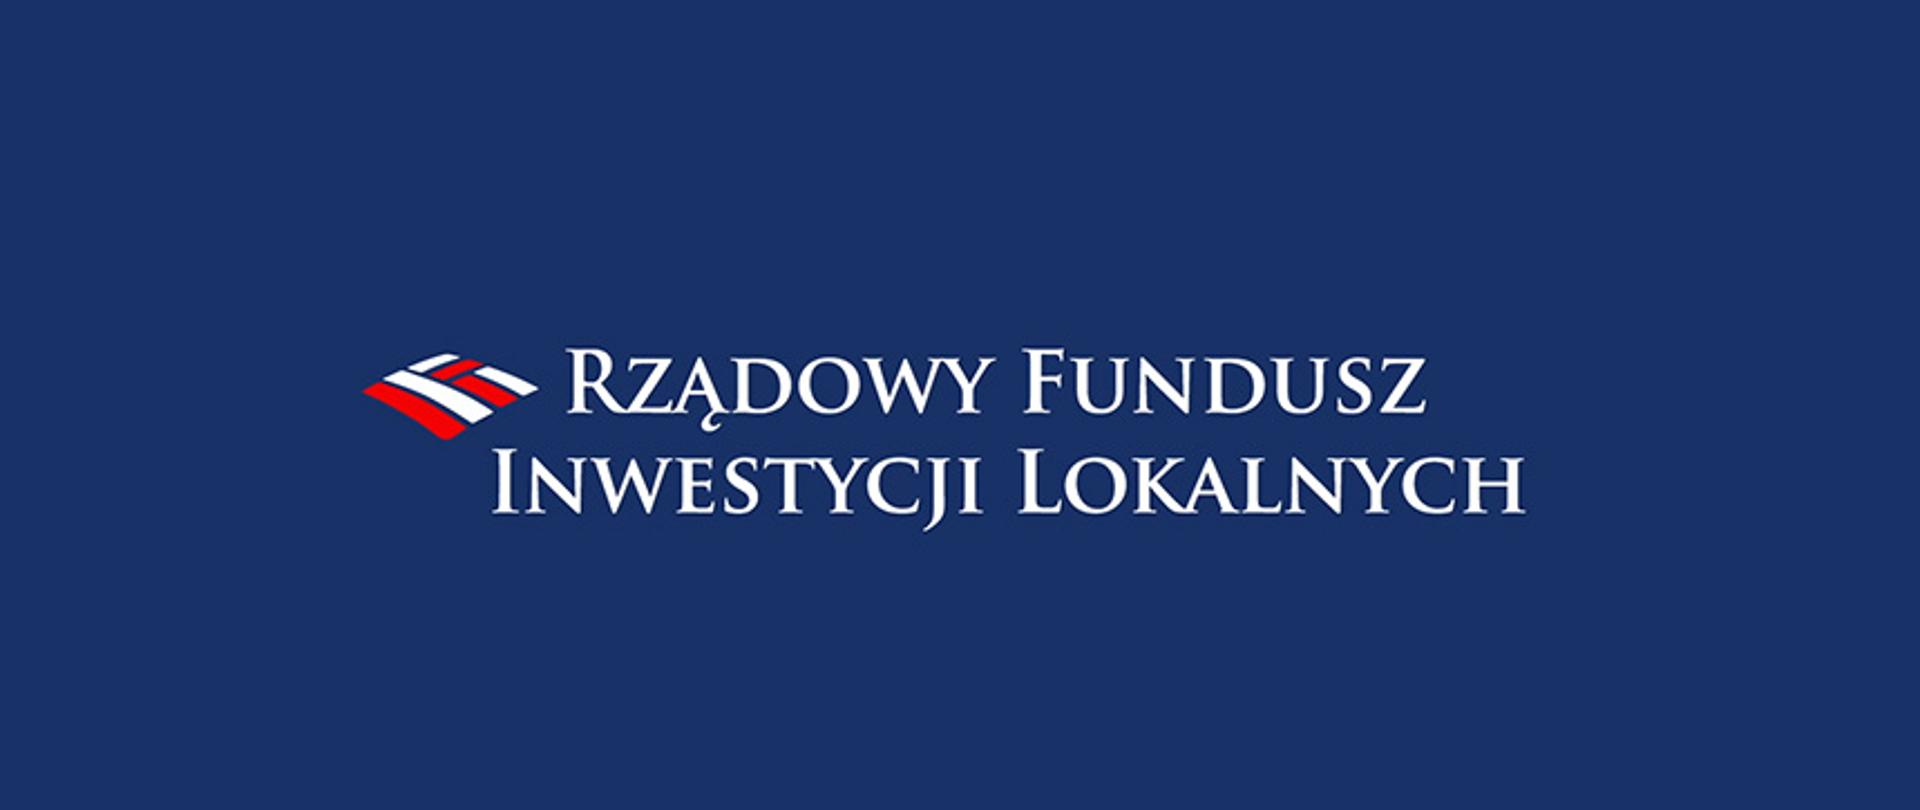 Wyniki naboru wniosków w ramach Rządowego Funduszu Inwestycji Lokalnych